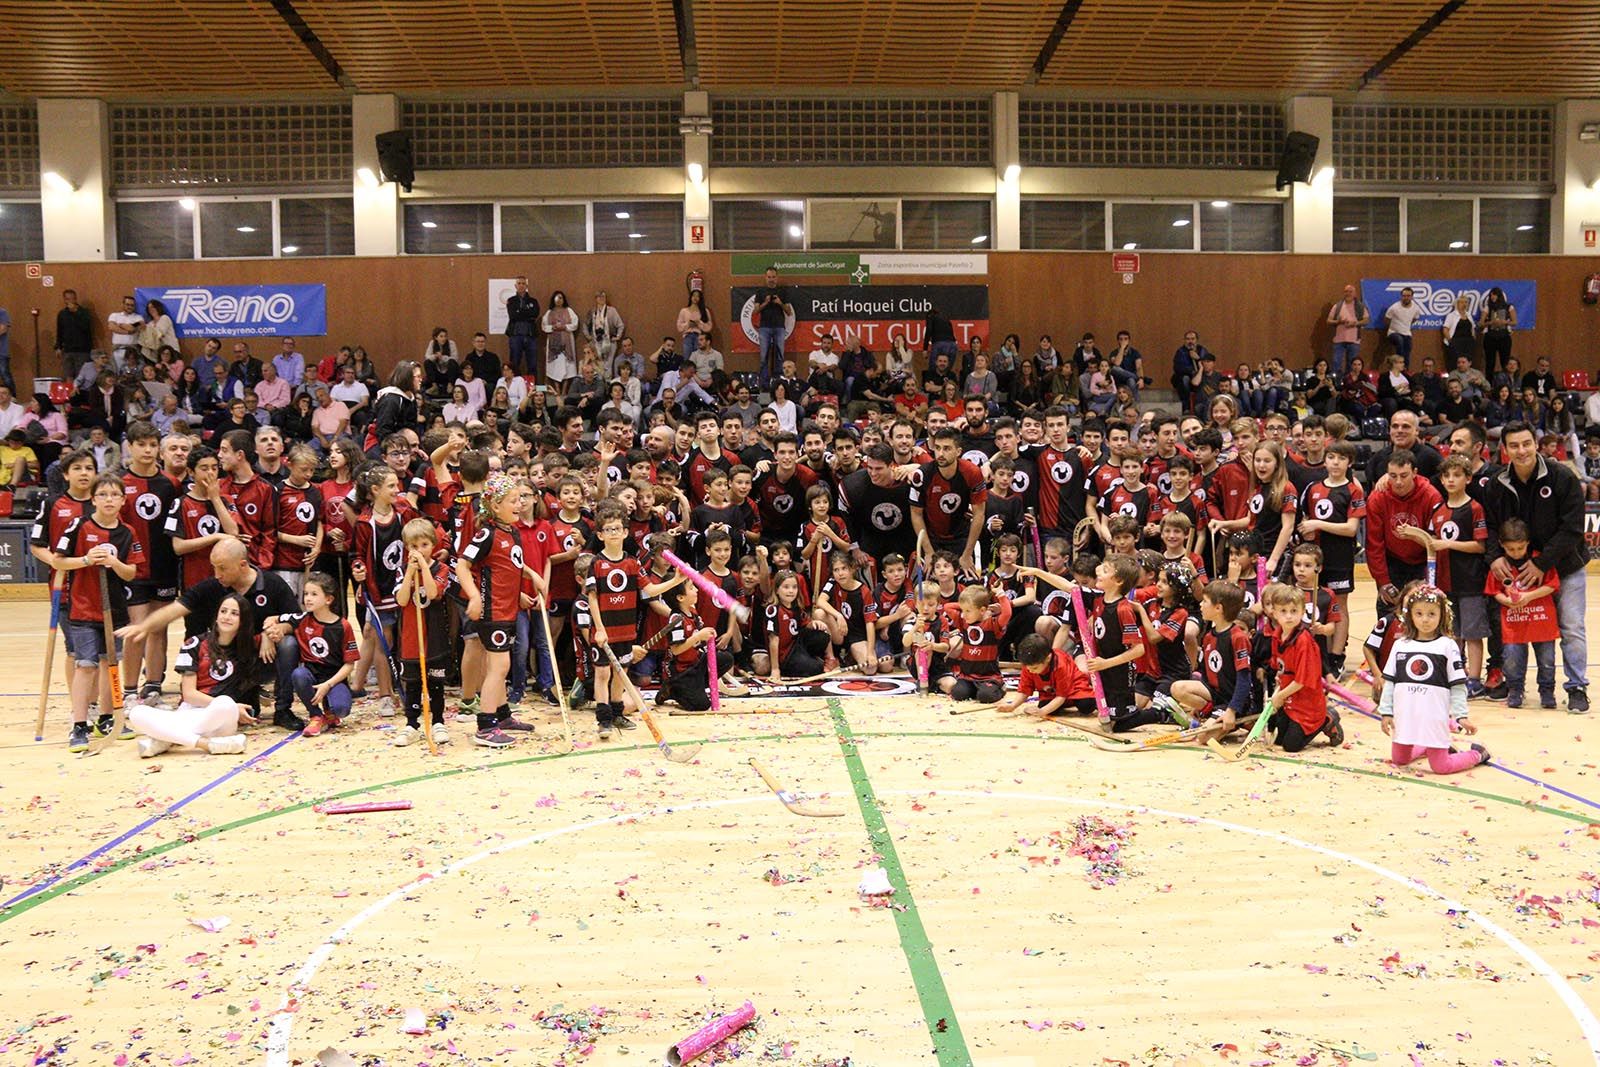 Celebració de l'ascens OK Lliga del PHC Sant Cugat. Foto: Lali Álvarez